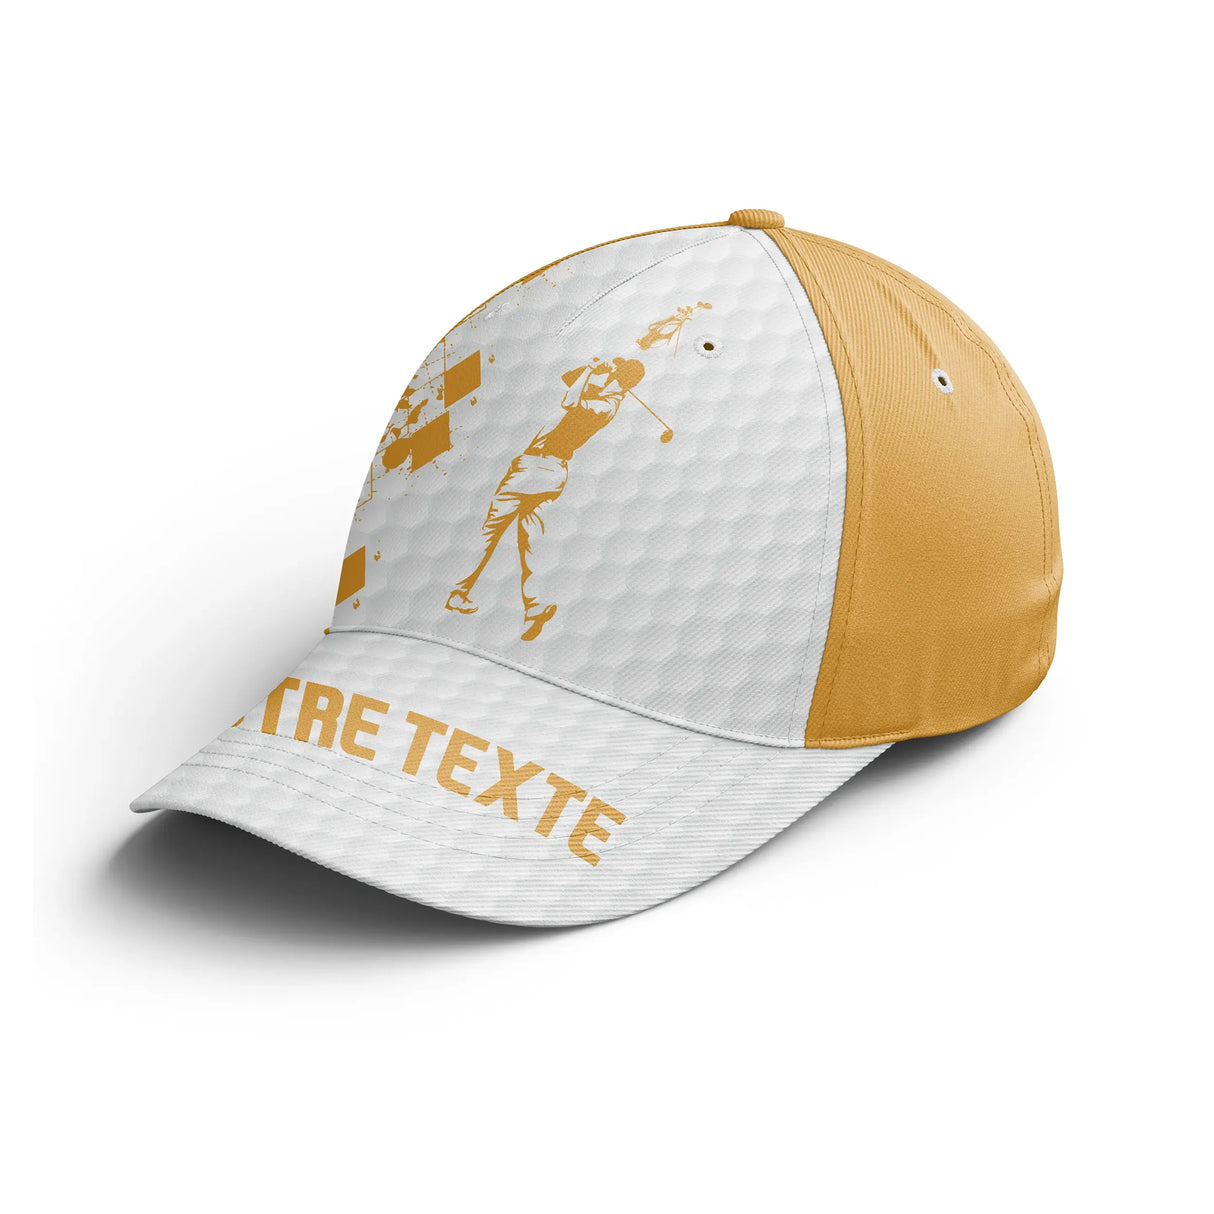 Chiptshirts-Performance Golf Cap-Regalo personalizado para fanáticos del golf, gorra deportiva para hombres y mujeres - CT15082218